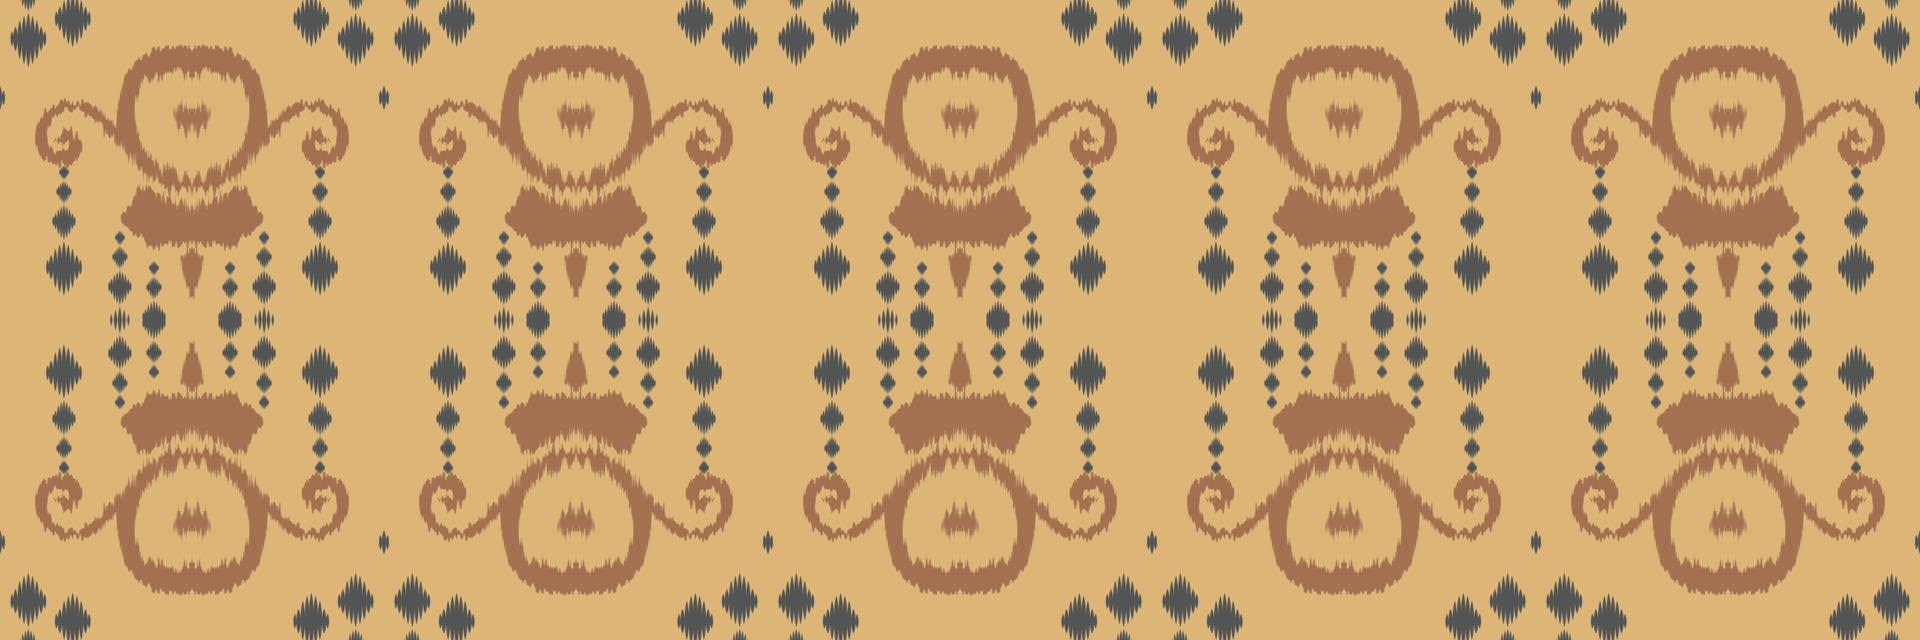 motivo textil batik tela ikat patrón sin costuras diseño de vector digital para impresión saree kurti borde de tela símbolos de pincel de borde diseñador de muestras